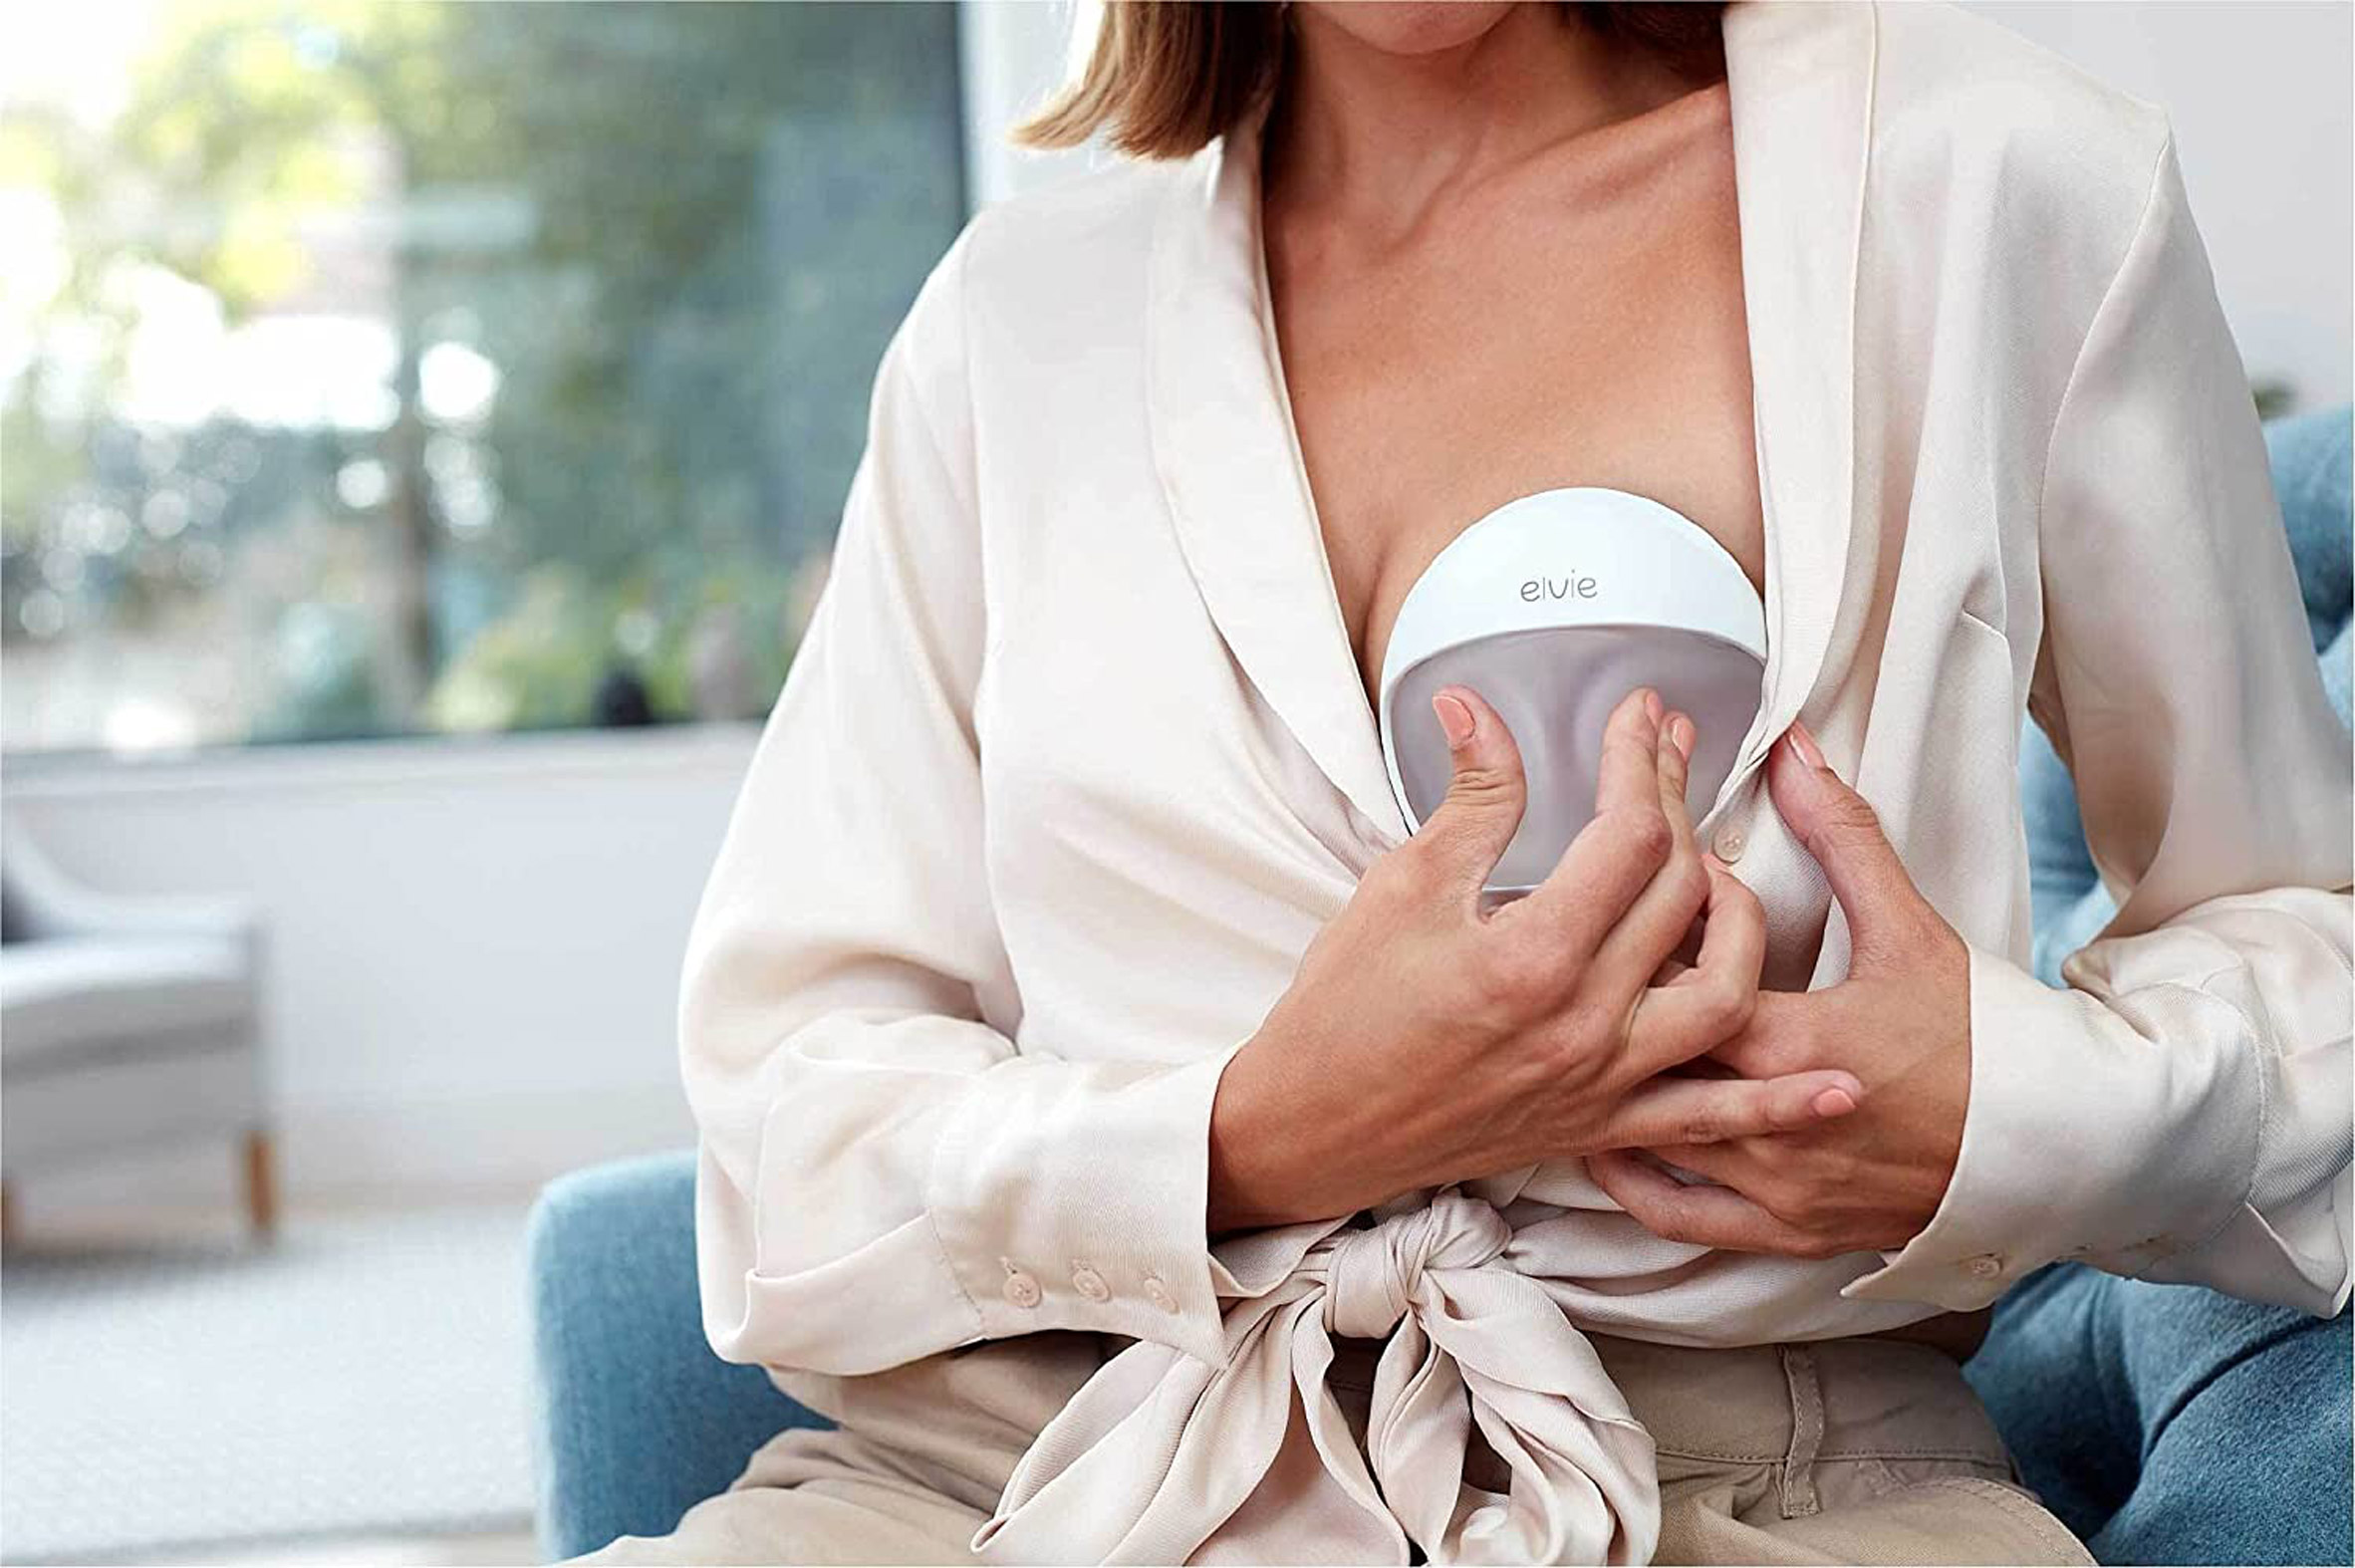 Women squeezing Elvie Curve breast pump to create vaccuum